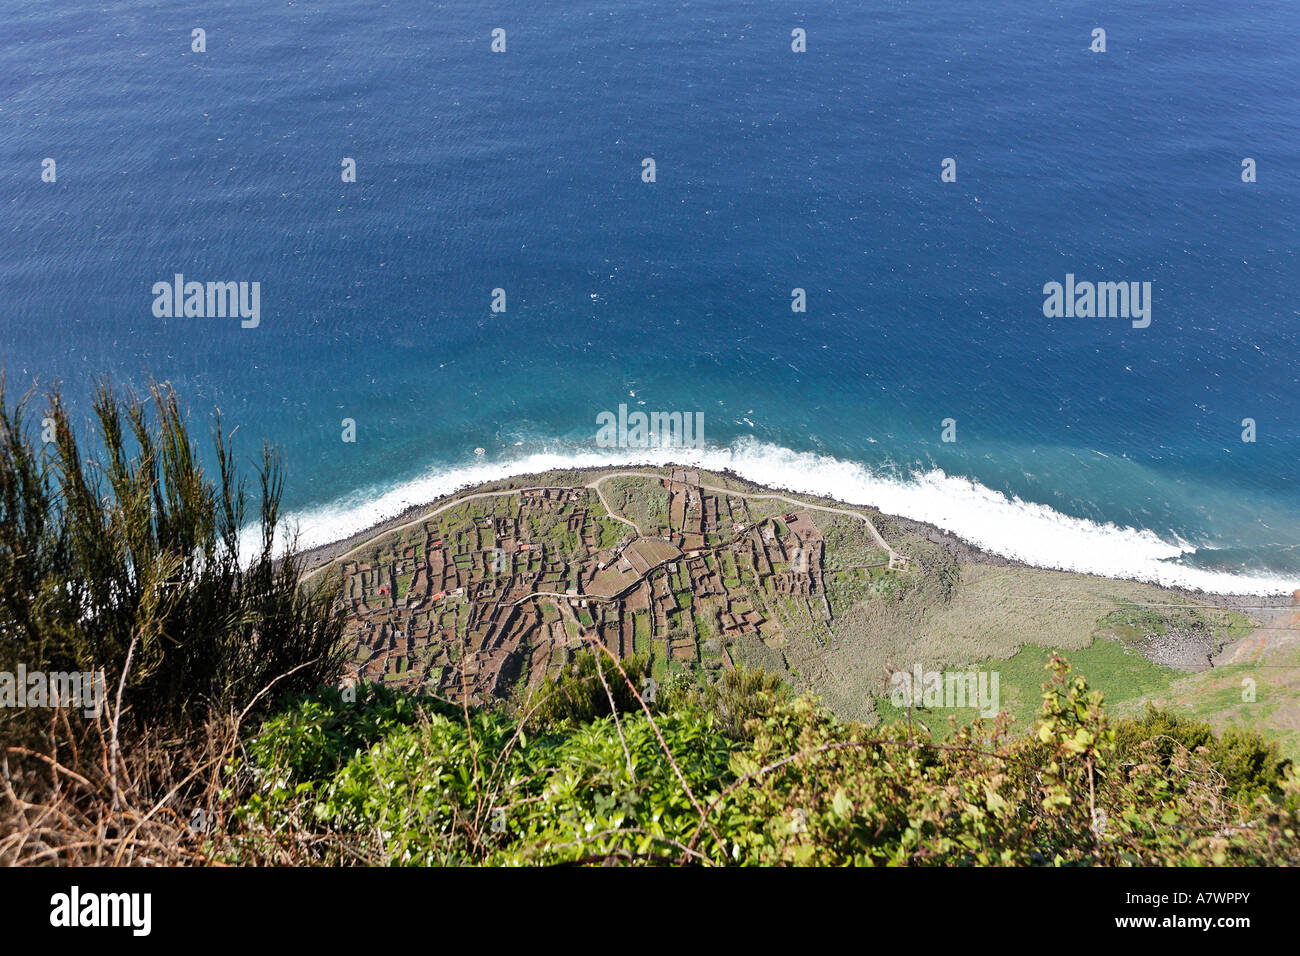 Felder am unteren Rand der Klippen, die nur mit der Seilbahn, Achadas da Cruz, Madeira, Portugal erreicht werden Stockfoto